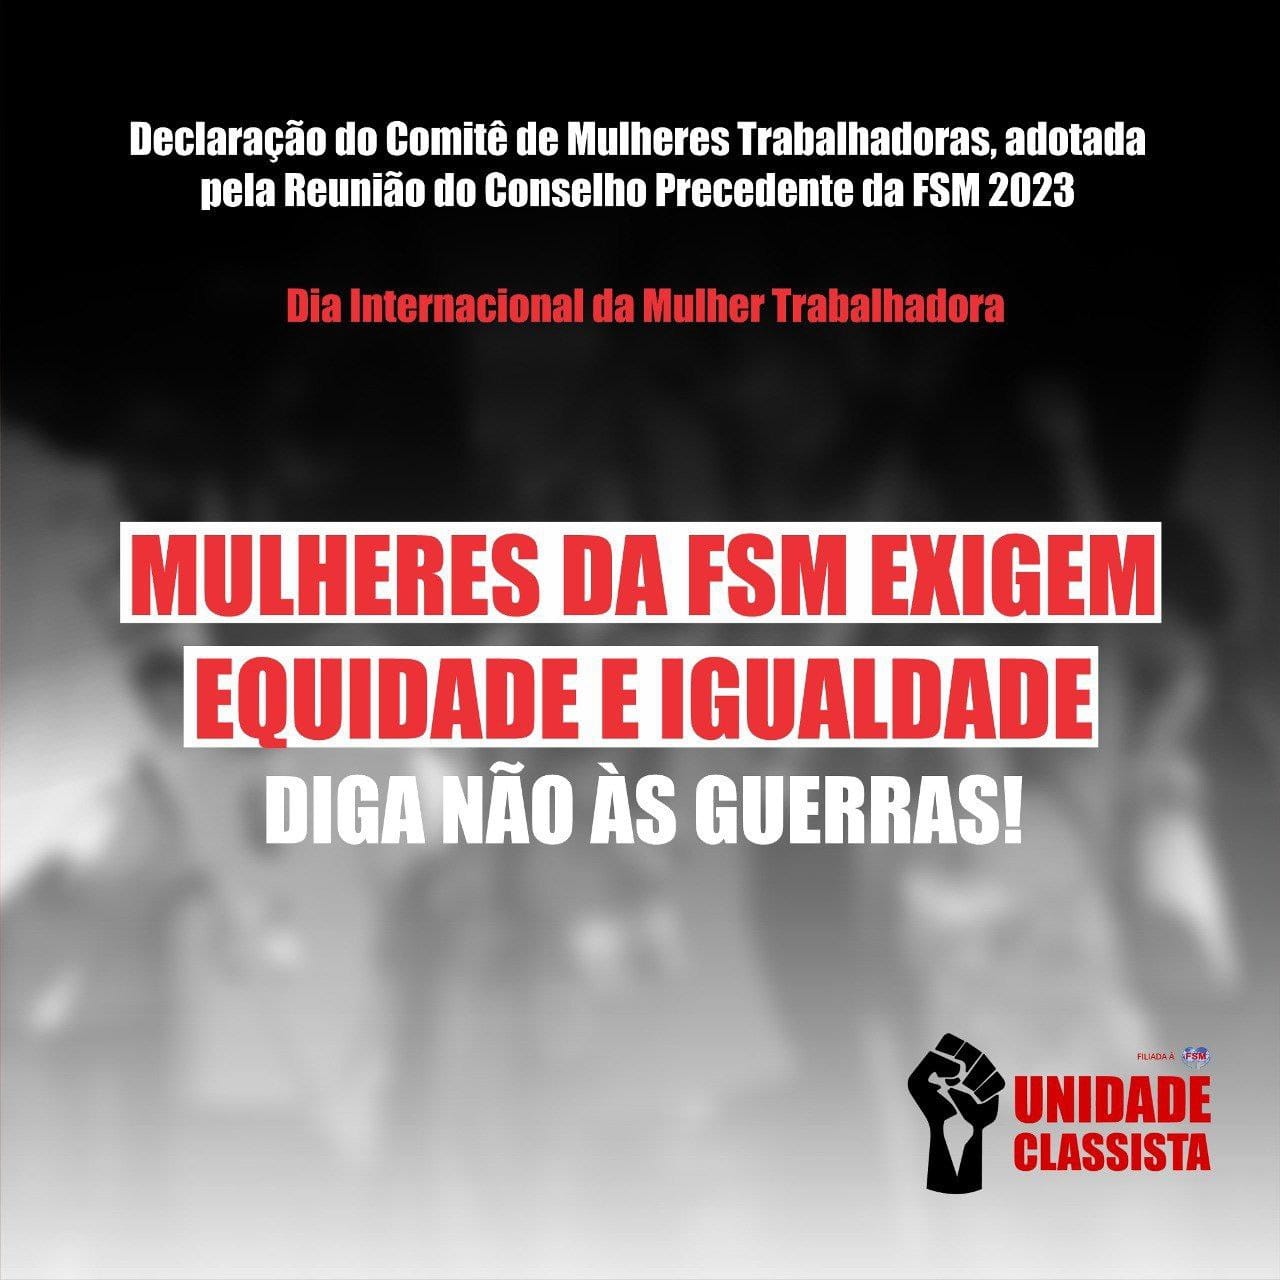 DECLARAÇÃO DO COMITÊ DE MULHERES TRABALHADORAS, ADOTADA PELA REUNIÃO DO CONSELHO PRECEDENTE DA FSM 2023